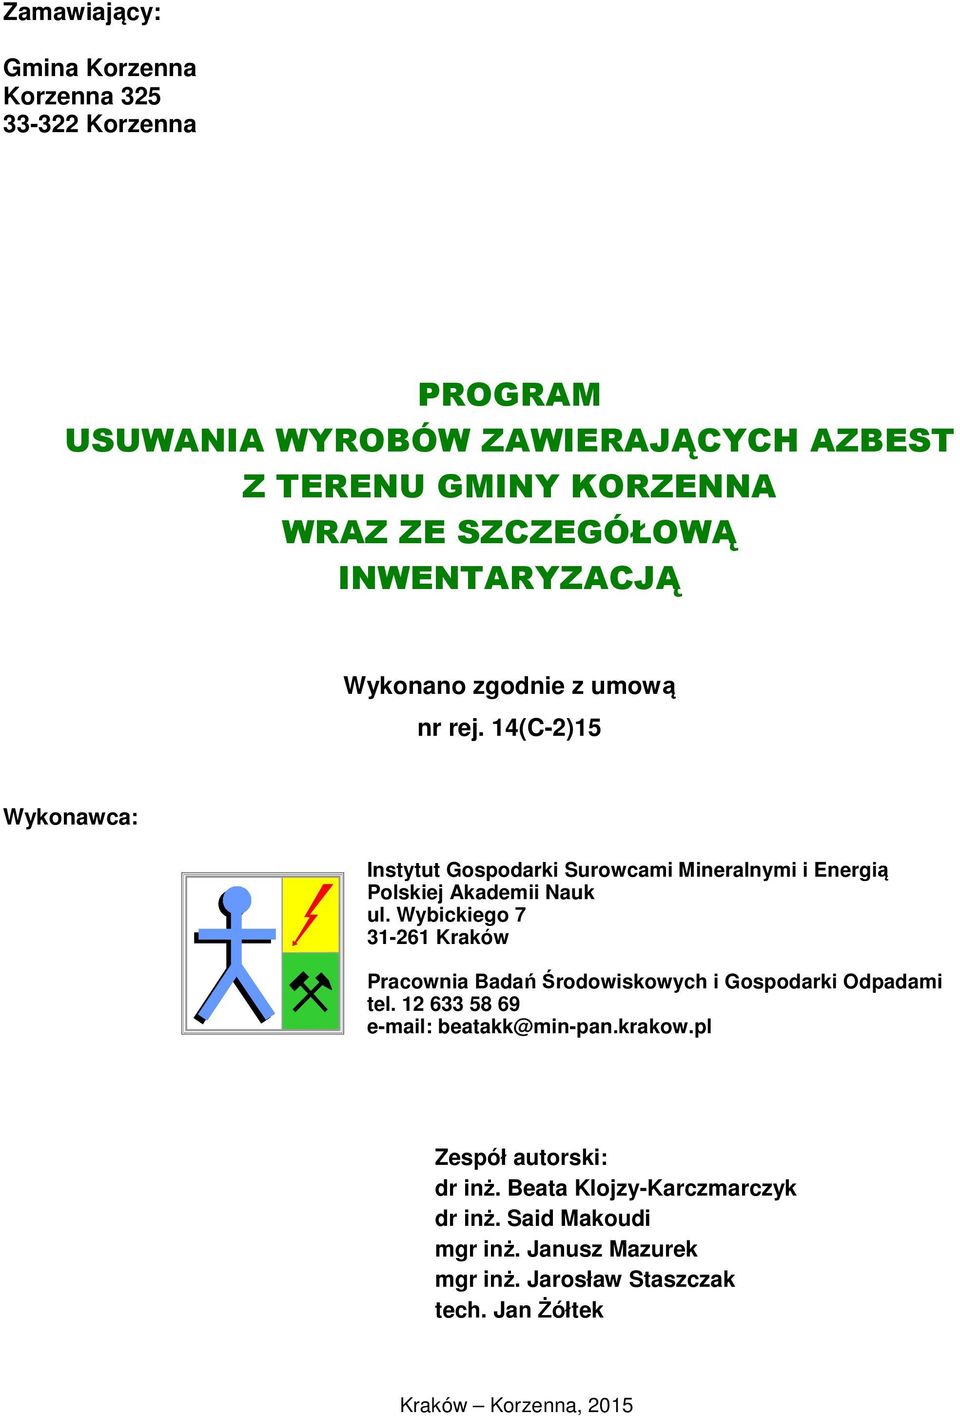 Wybickiego 7 31-261 Kraków Pracownia Badań Środowiskowych i Gospodarki Odpadami tel. 12 633 58 69 e-mail: beatakk@min-pan.krakow.